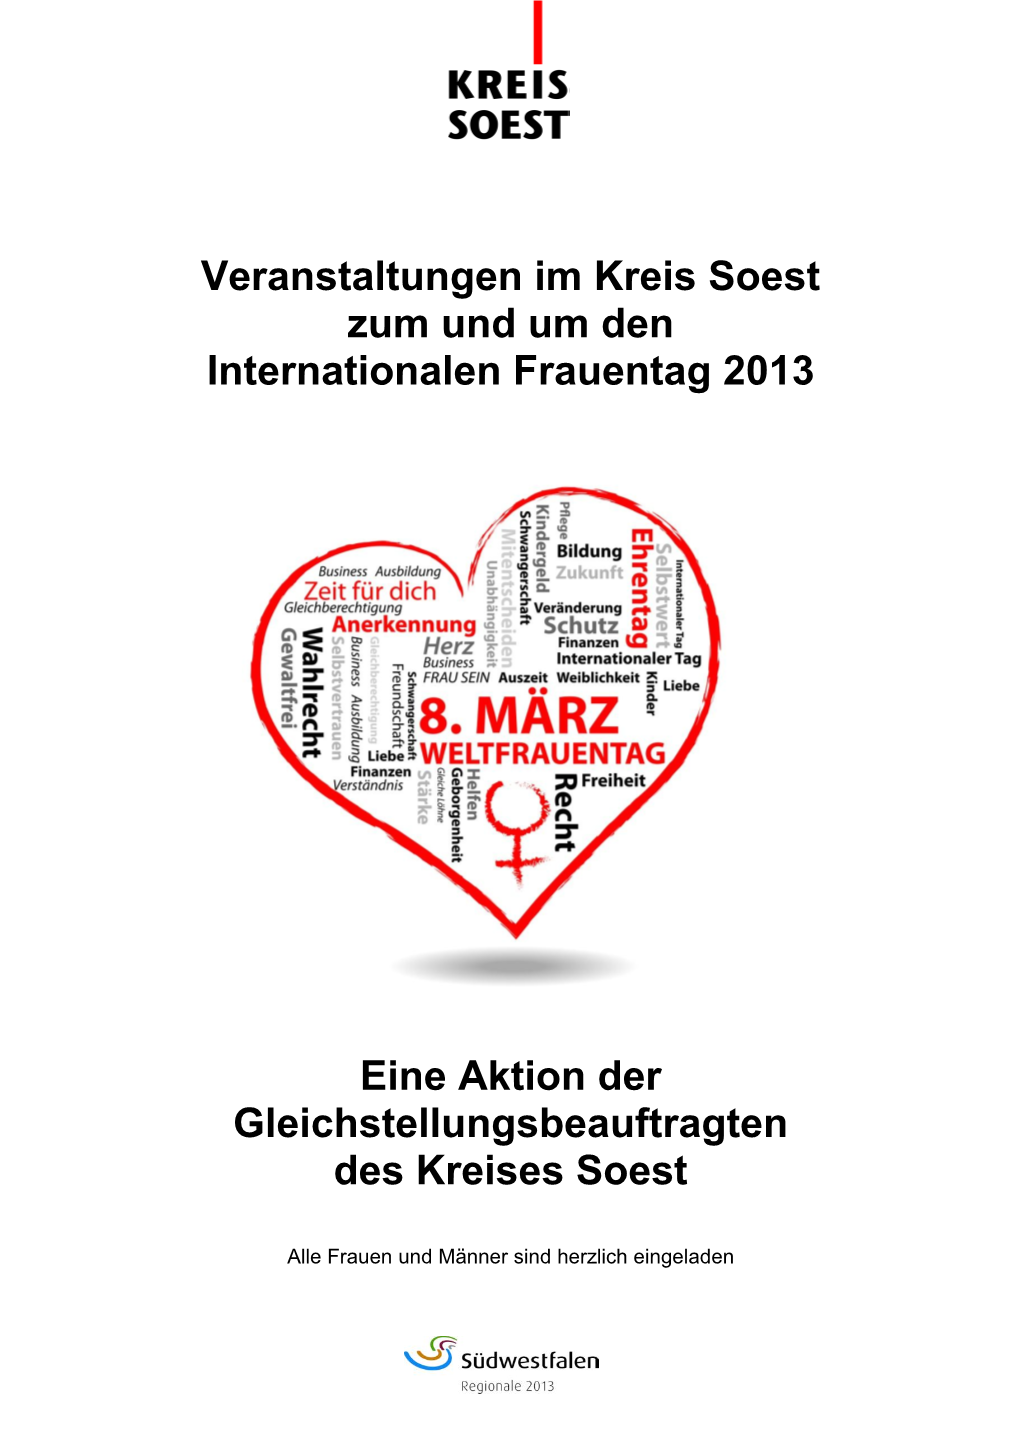 Veranstaltungen Im Kreis Soest Zum Und Um Den Internationalen Frauentag 2013